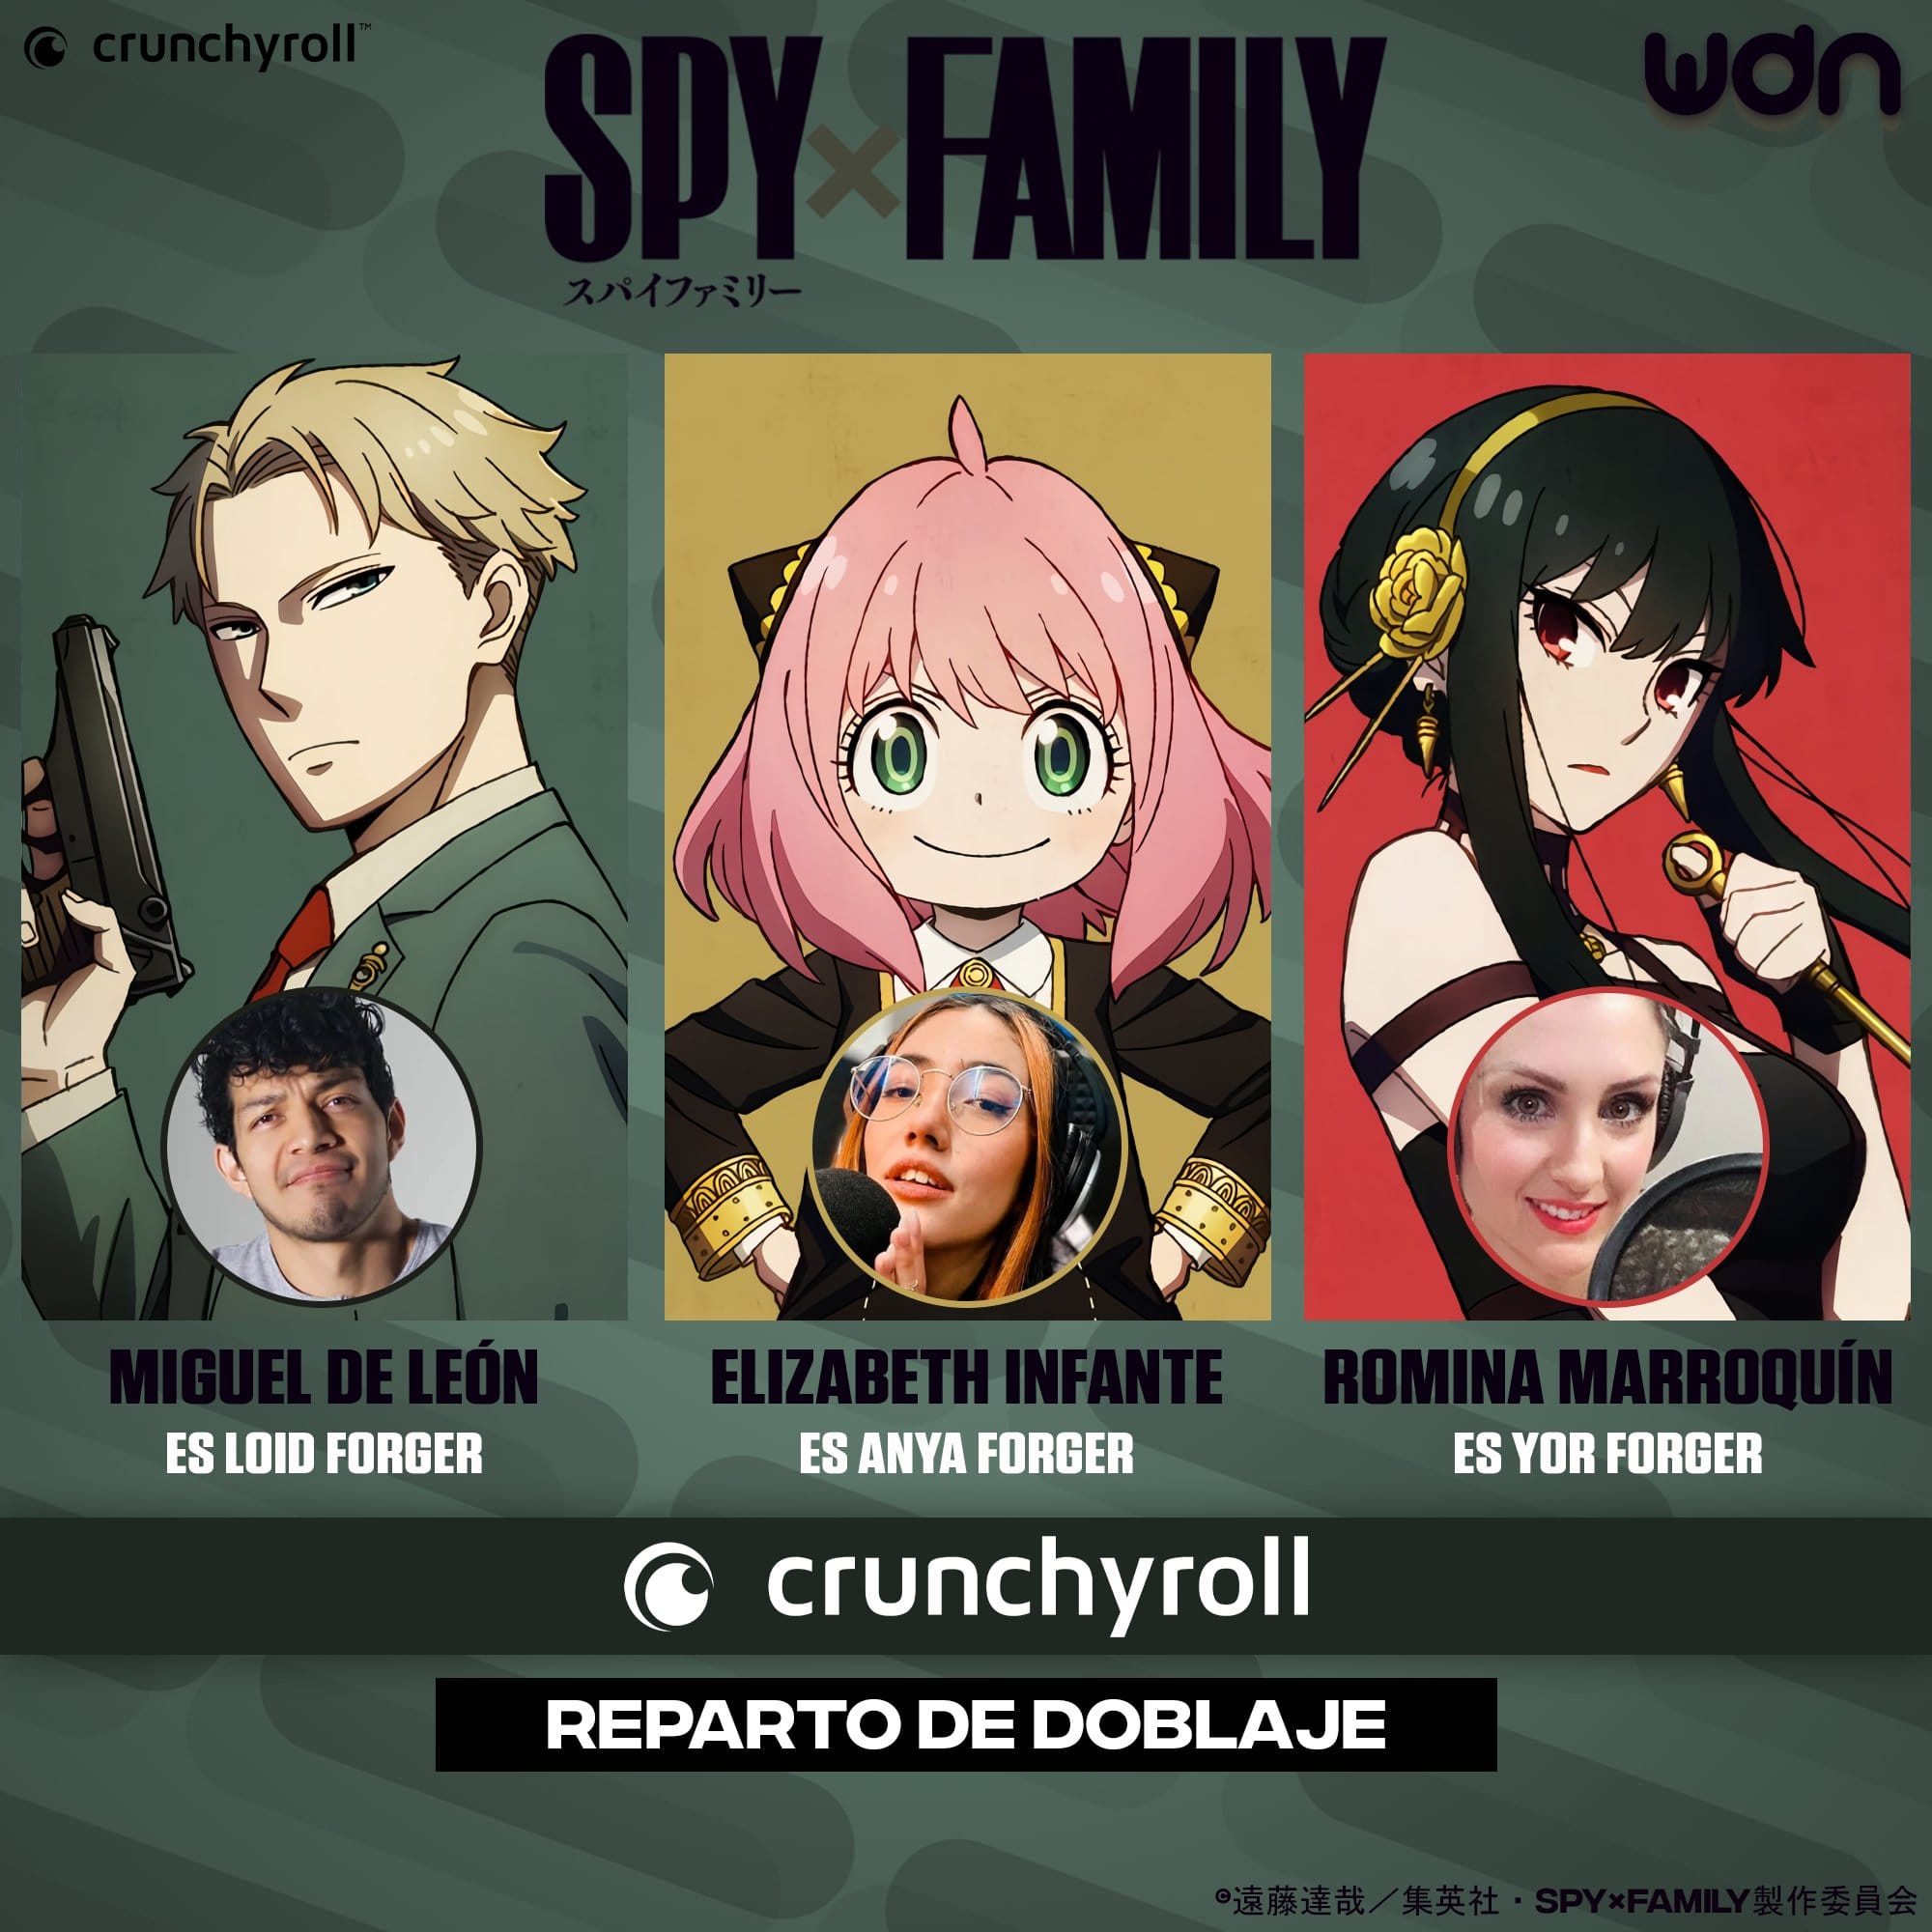 Crunchyroll anuncia doblaje latino de Spy x Family, The Rising of